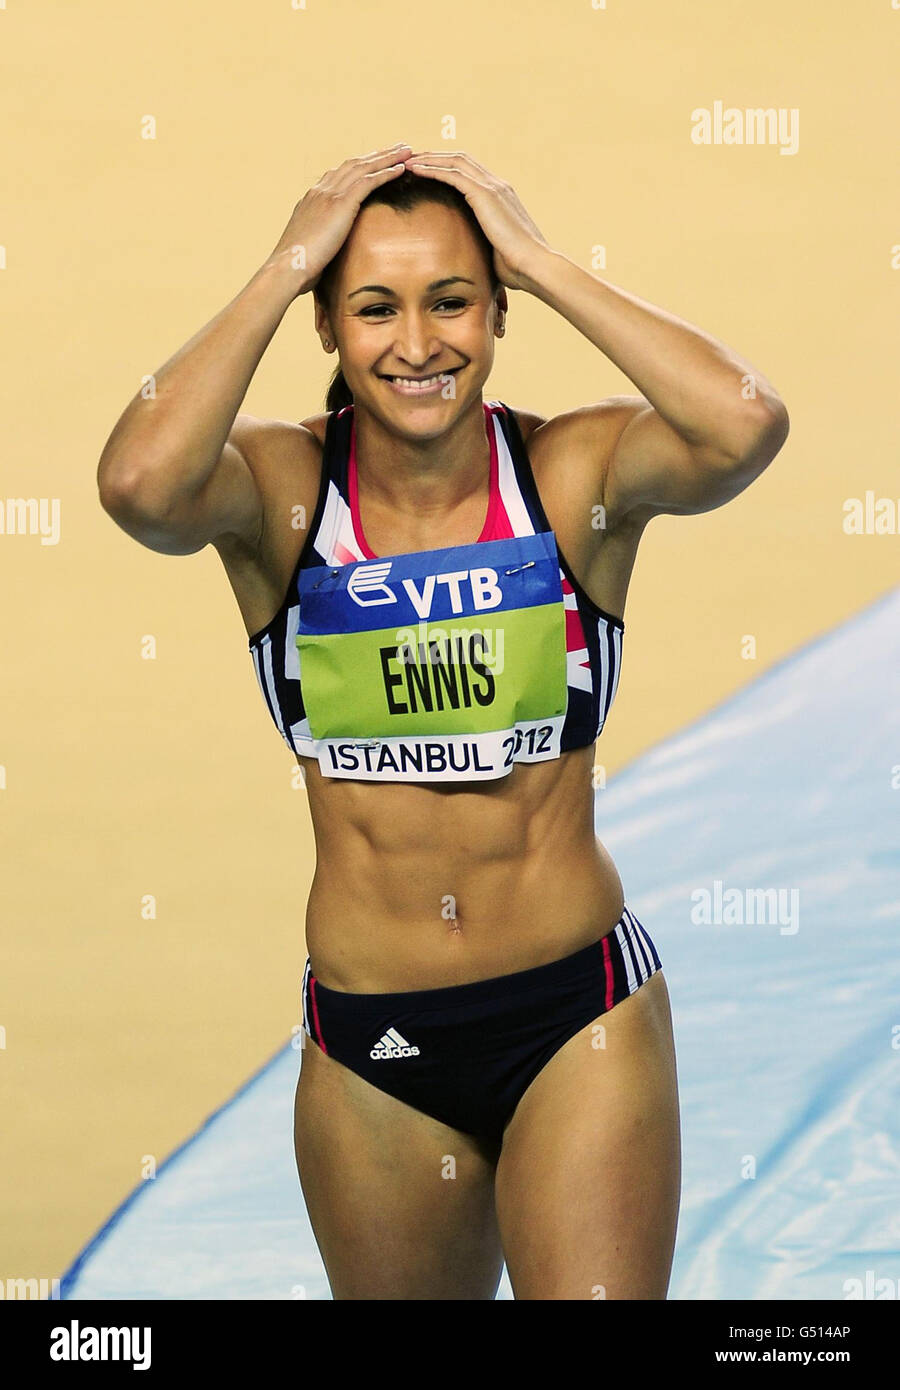 Die britische Jessica Ennis lächelt, als sie während der IAAF Hallenweltmeisterschaften in der Atakoy Athletics Arena, Istanbul, Türkei, den Höhepunkt des High Jump-Events des Frauenpentathlons freimacht. Stockfoto